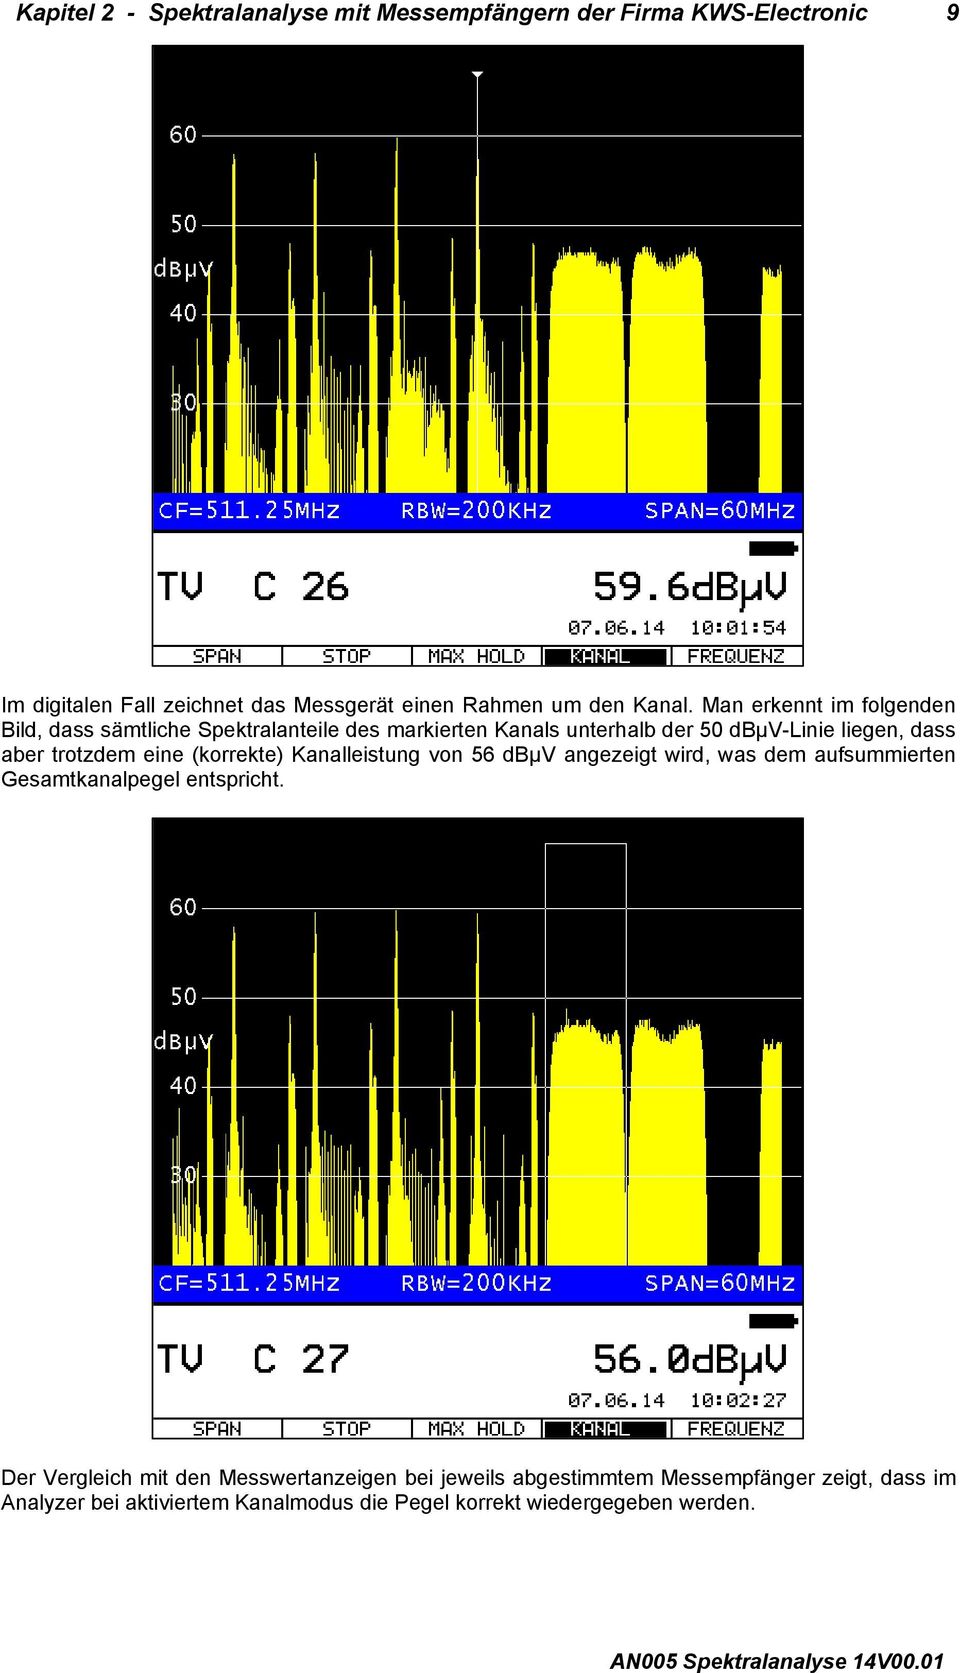 Man erkennt im folgenden Bild, dass sämtliche Spektralanteile des markierten Kanals unterhalb der 50 dbµv-linie liegen, dass aber trotzdem